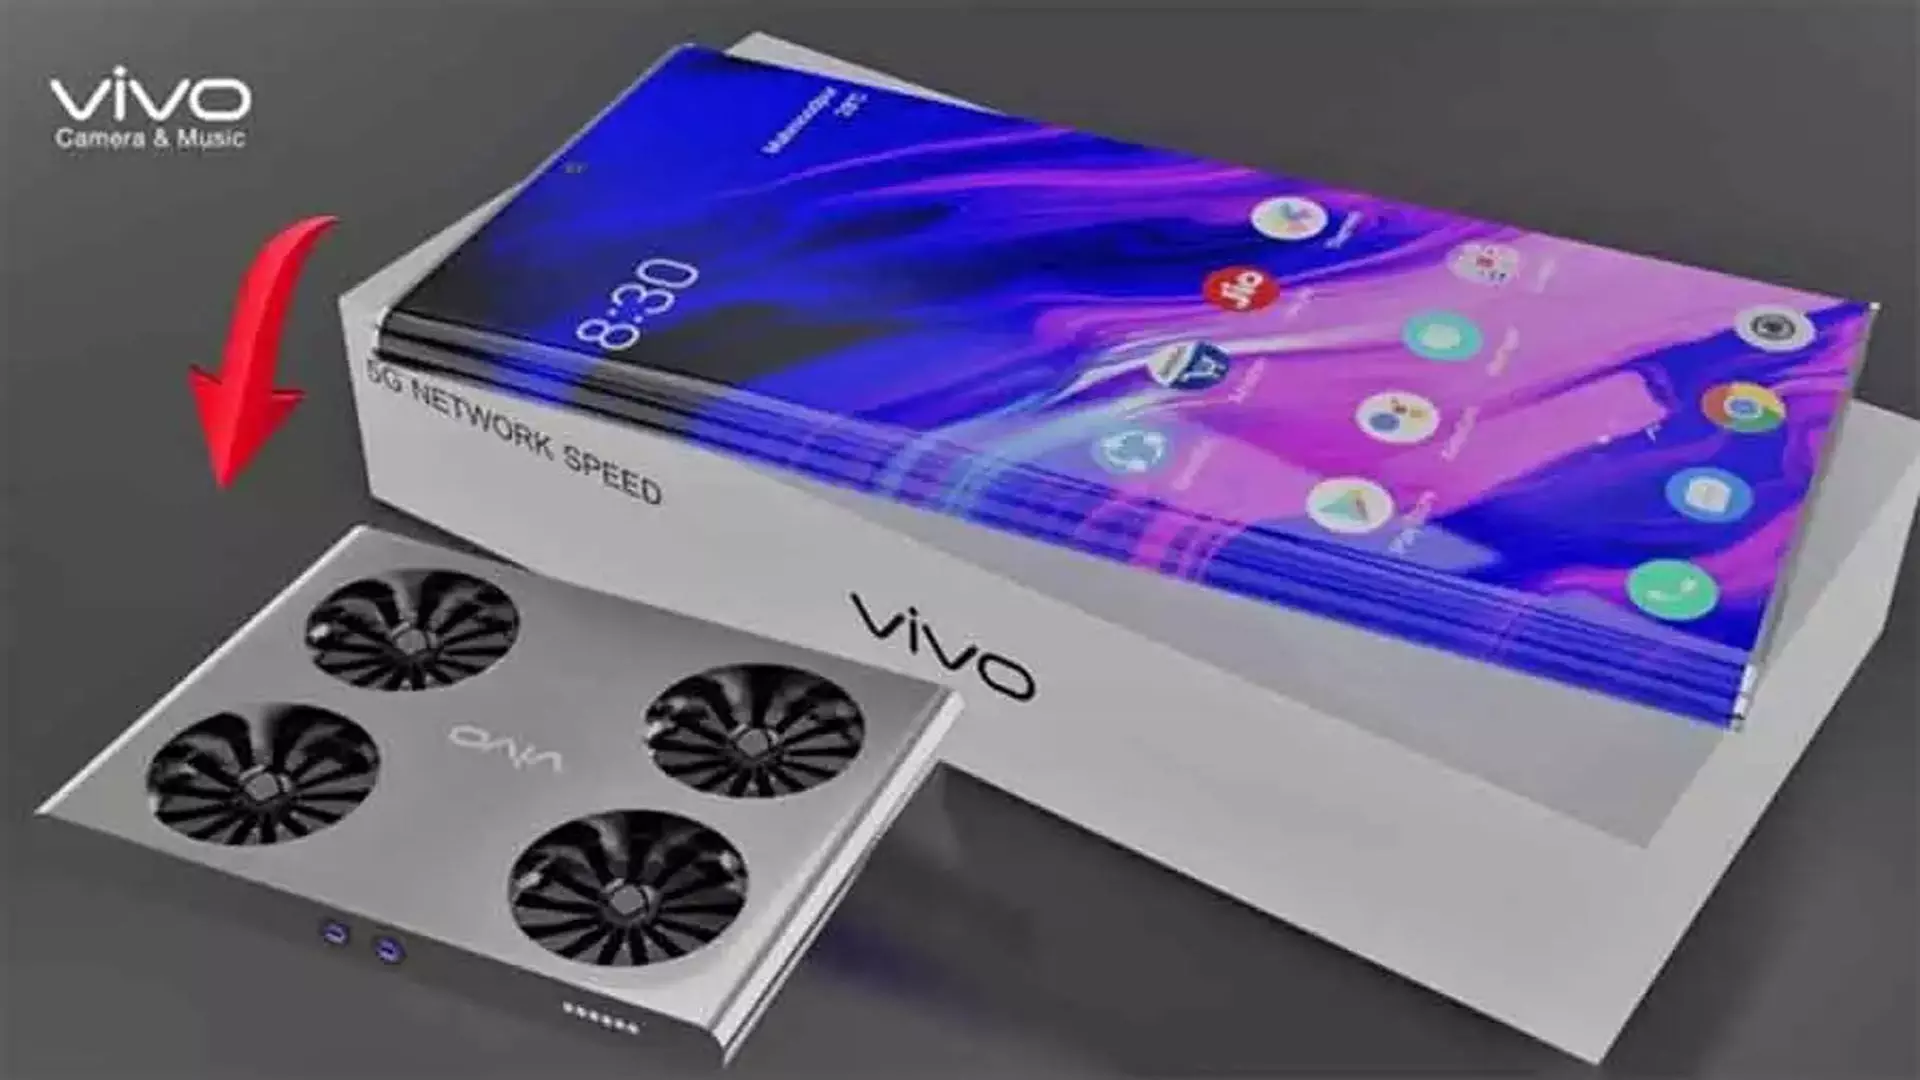 Vivo X Flip Specs: 12GB RAM, साथ में 50MP का कैमरा, जानिए फीचर्स